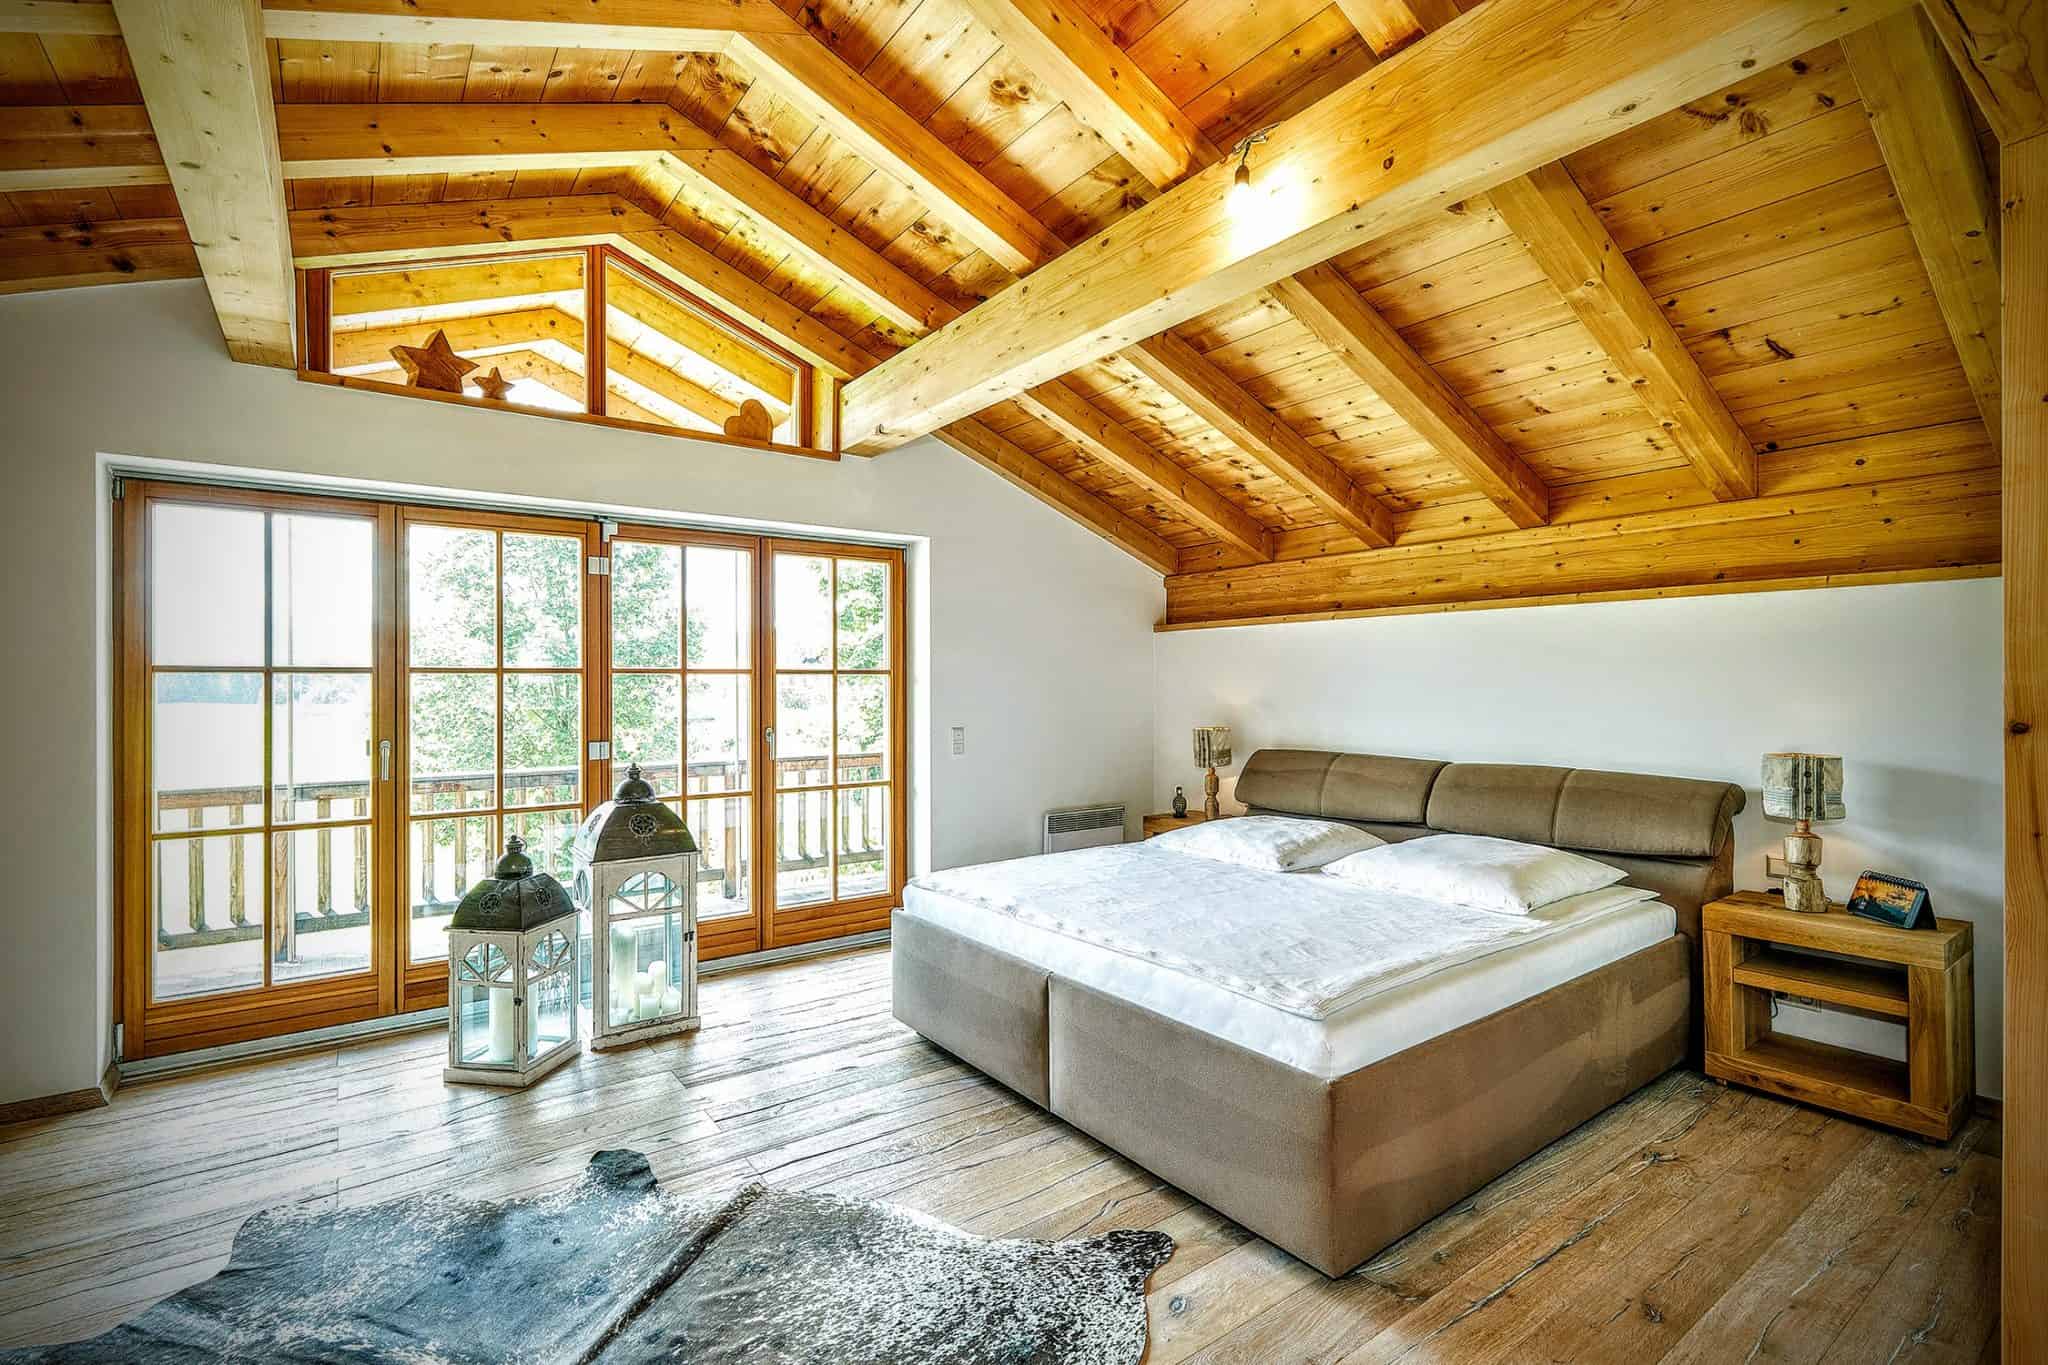 Dachstuhl aus Meisterhand - Referenz Projekt - Holzbau Alpin Zimmerei und Innenausbau